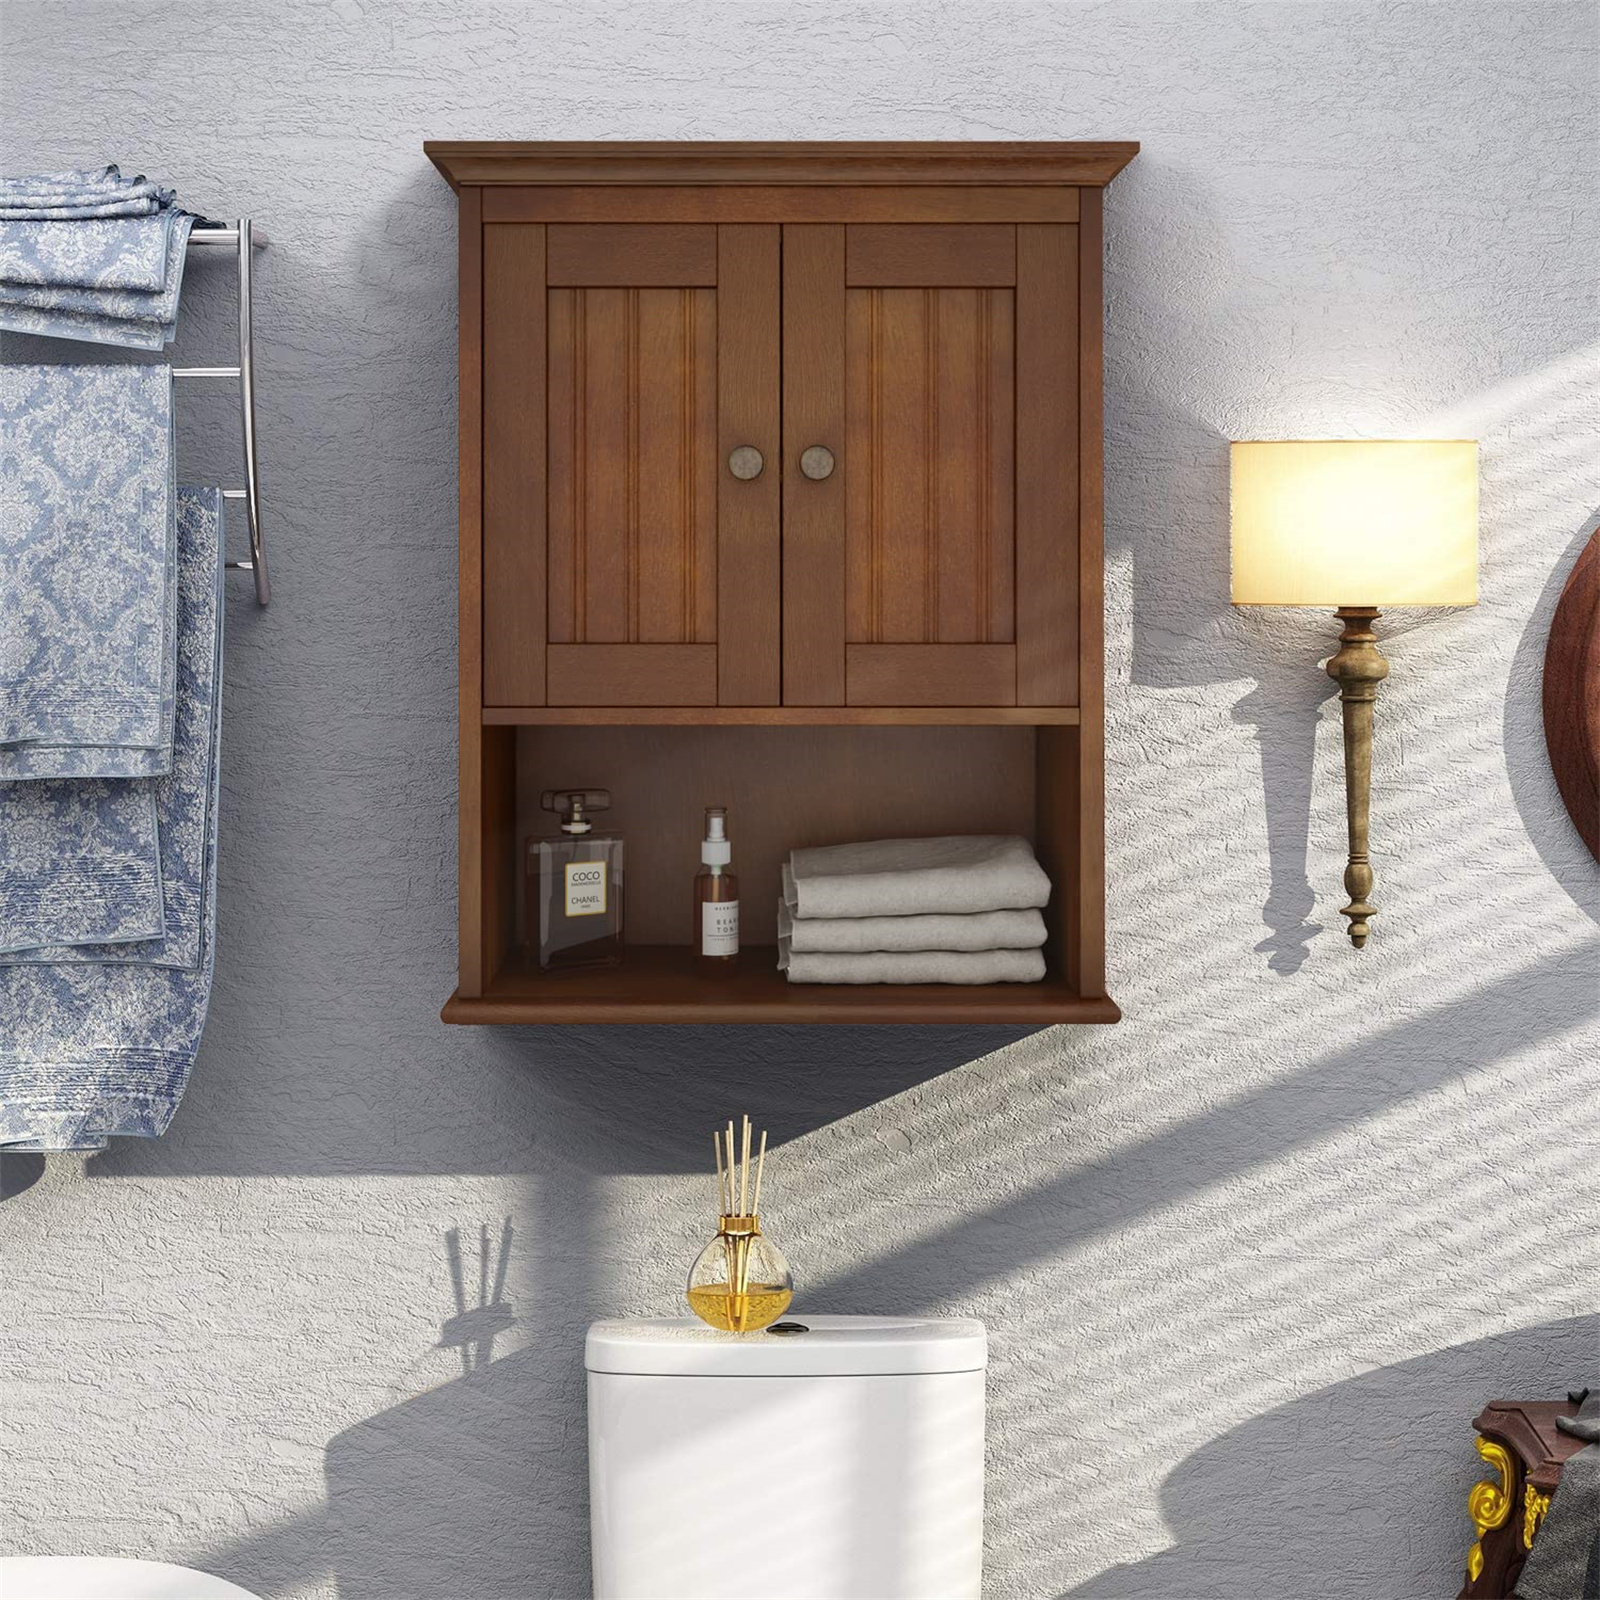 Wildon Home® Hayllar Wall Bathroom Cabinet